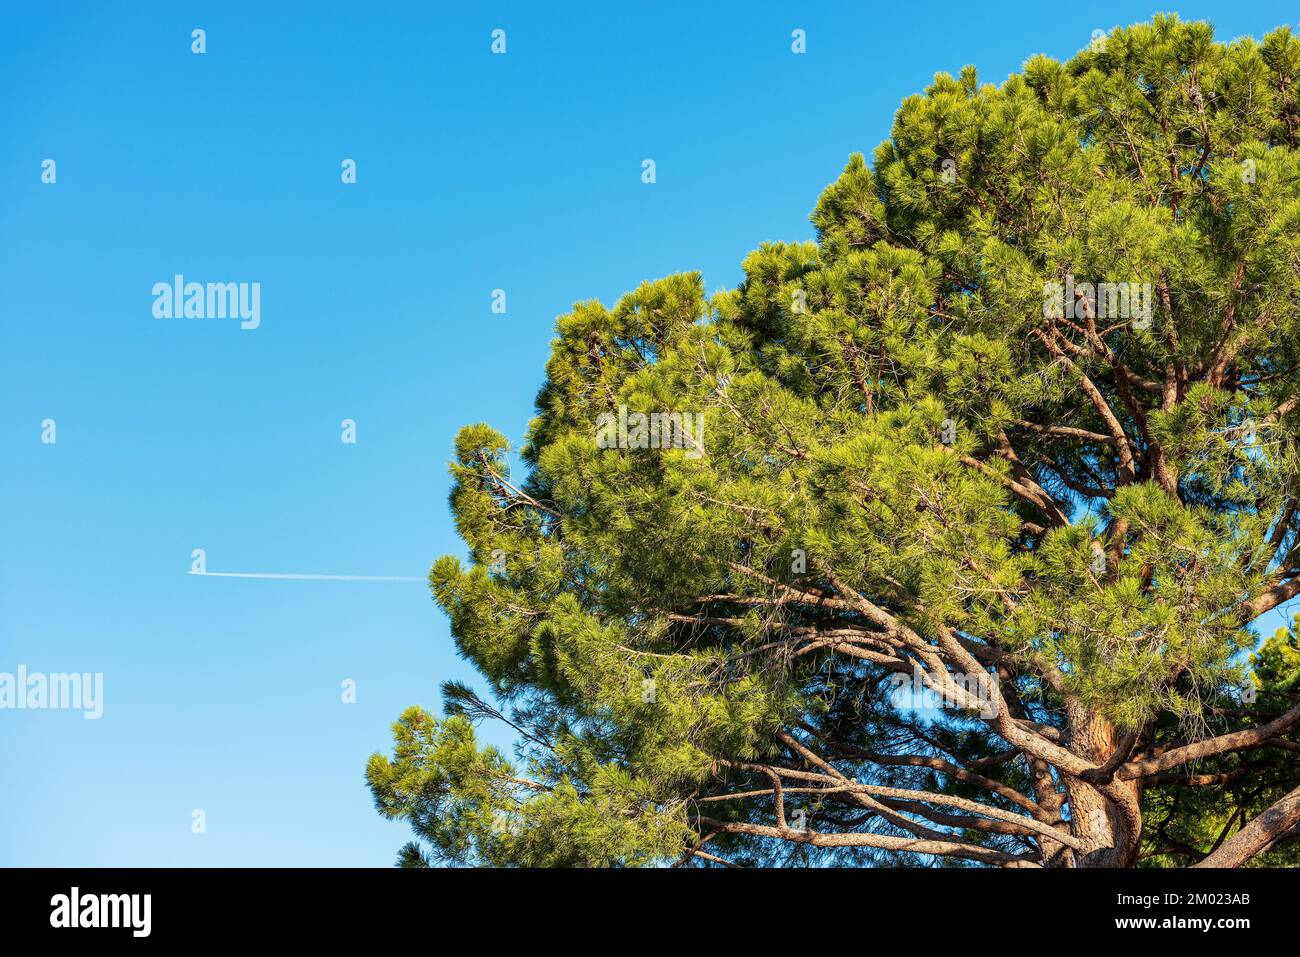 Primo piano di un verde pino marittimo contro un cielo azzurro chiaro. Regione mediterranea, costa del Lago di Garda, provincia di Verona, Veneto, Italia, Europa meridionale Foto Stock